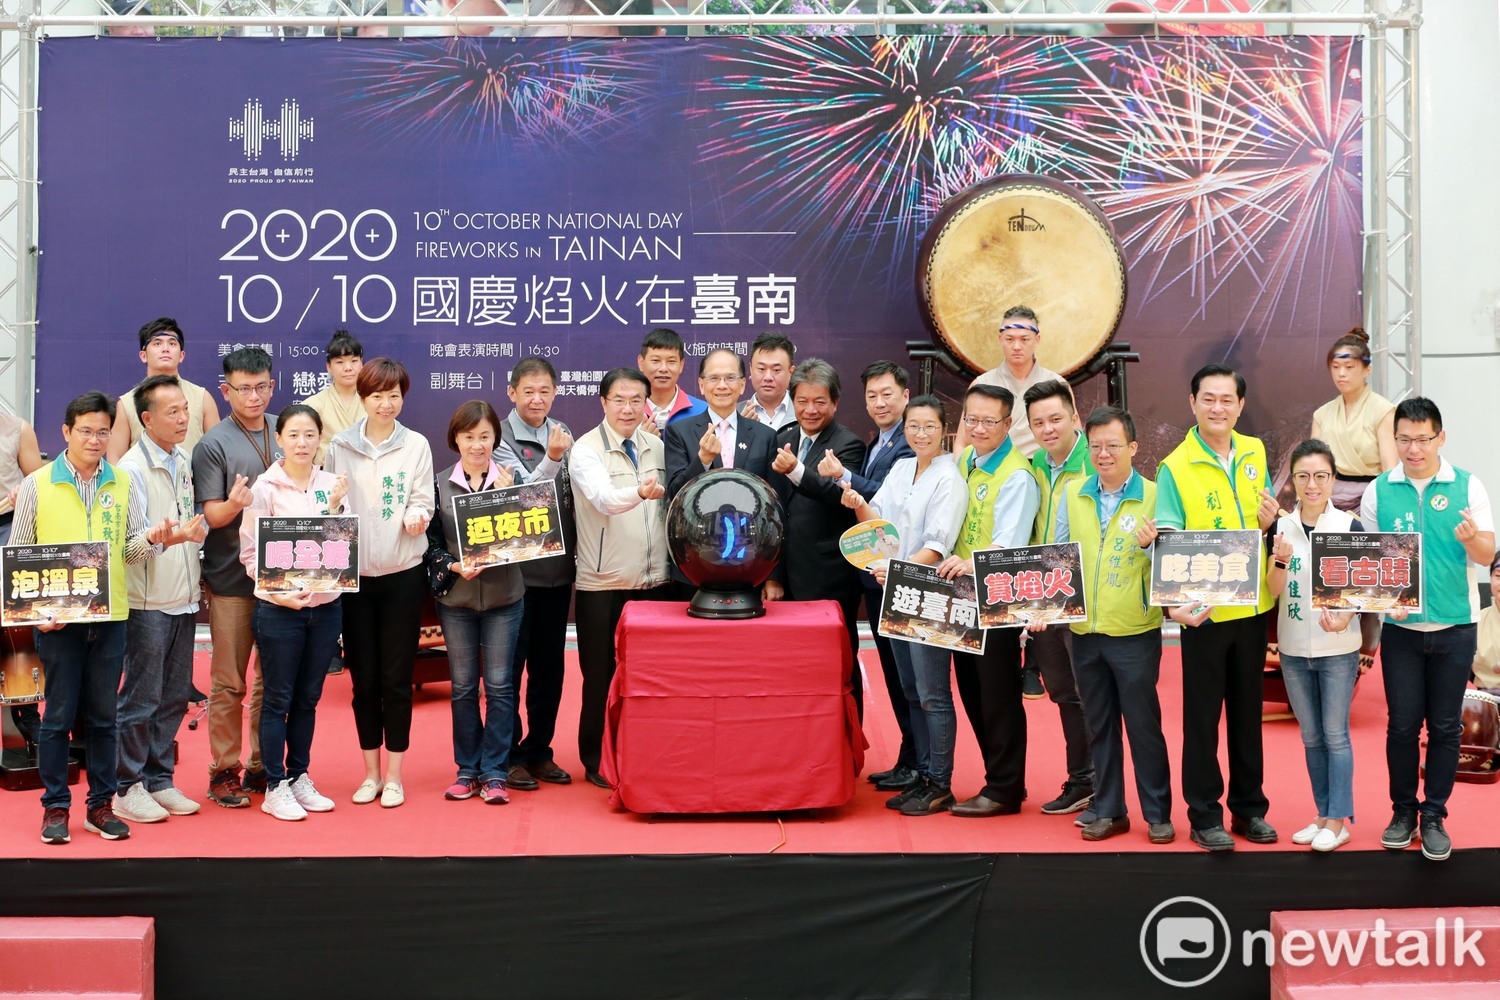 2020國慶焰火在台南  黃偉哲與游錫堃共同揭幕